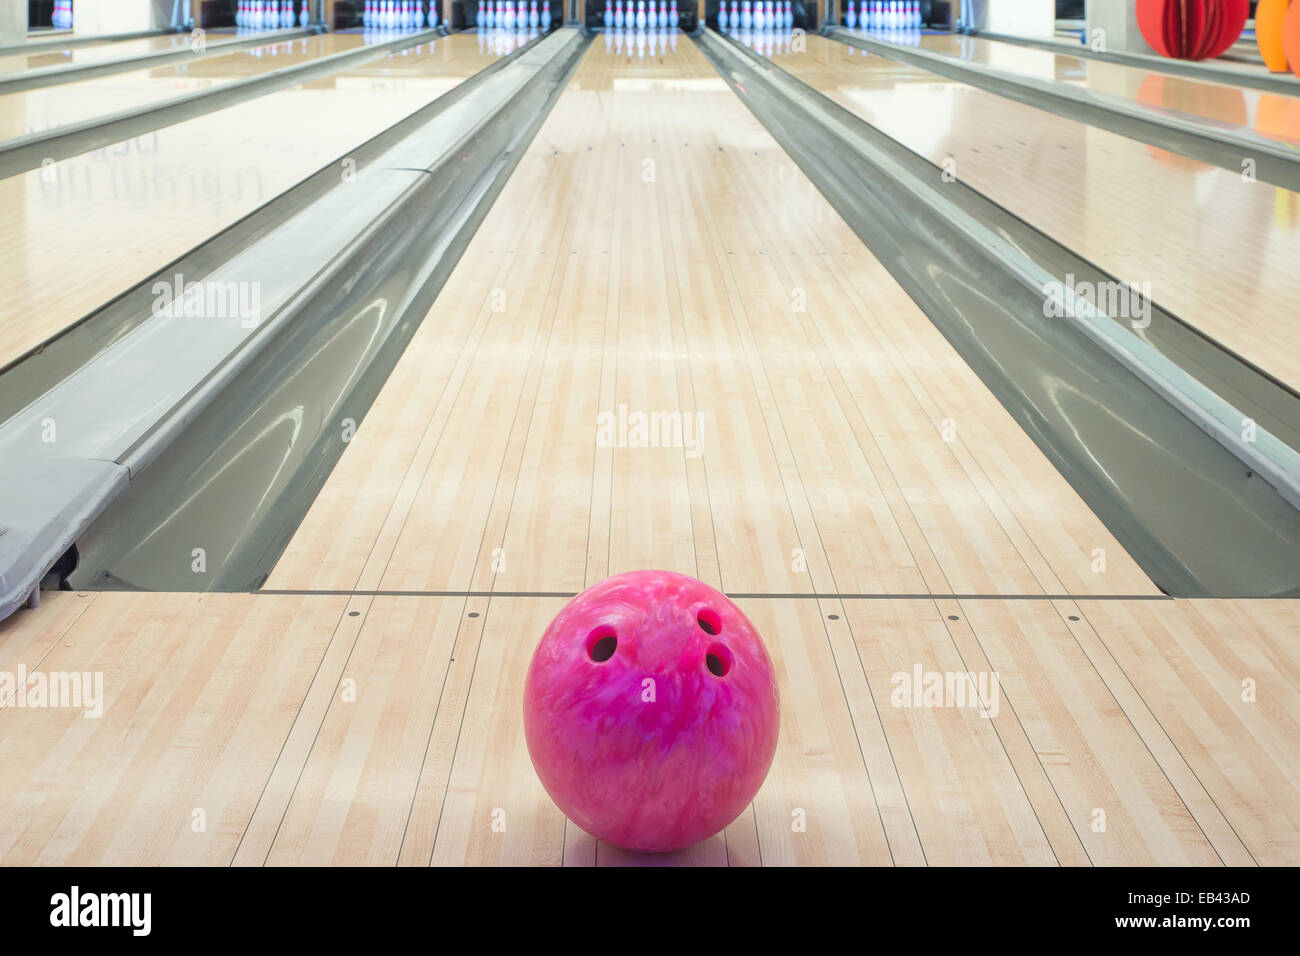 Sur boules de bowling contre dix quilles Banque D'Images